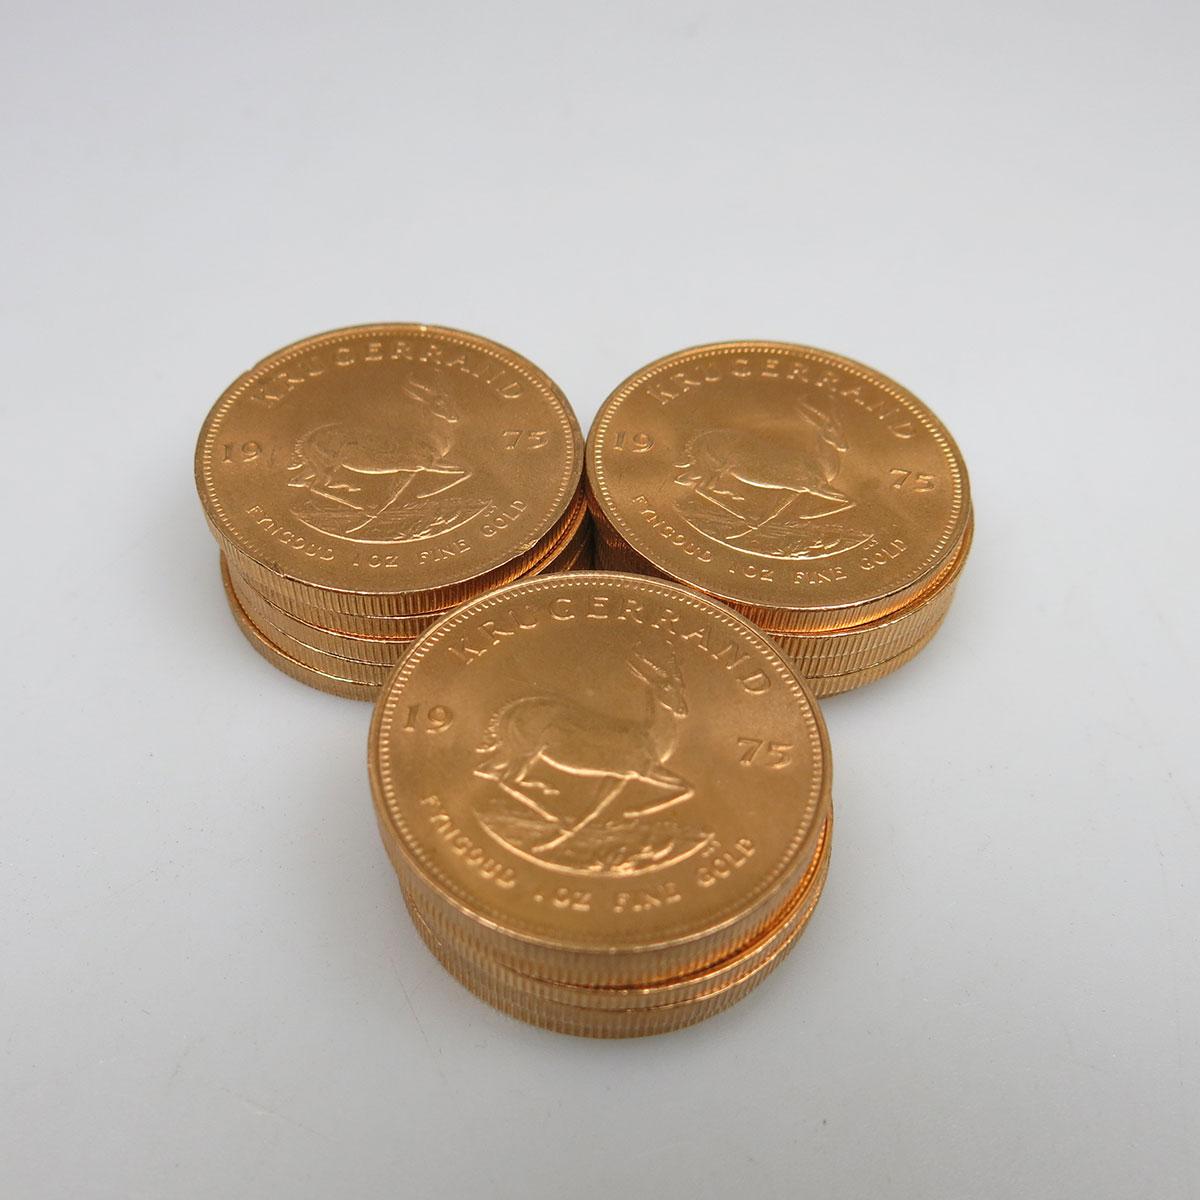 15 Krugerrand Gold Coins